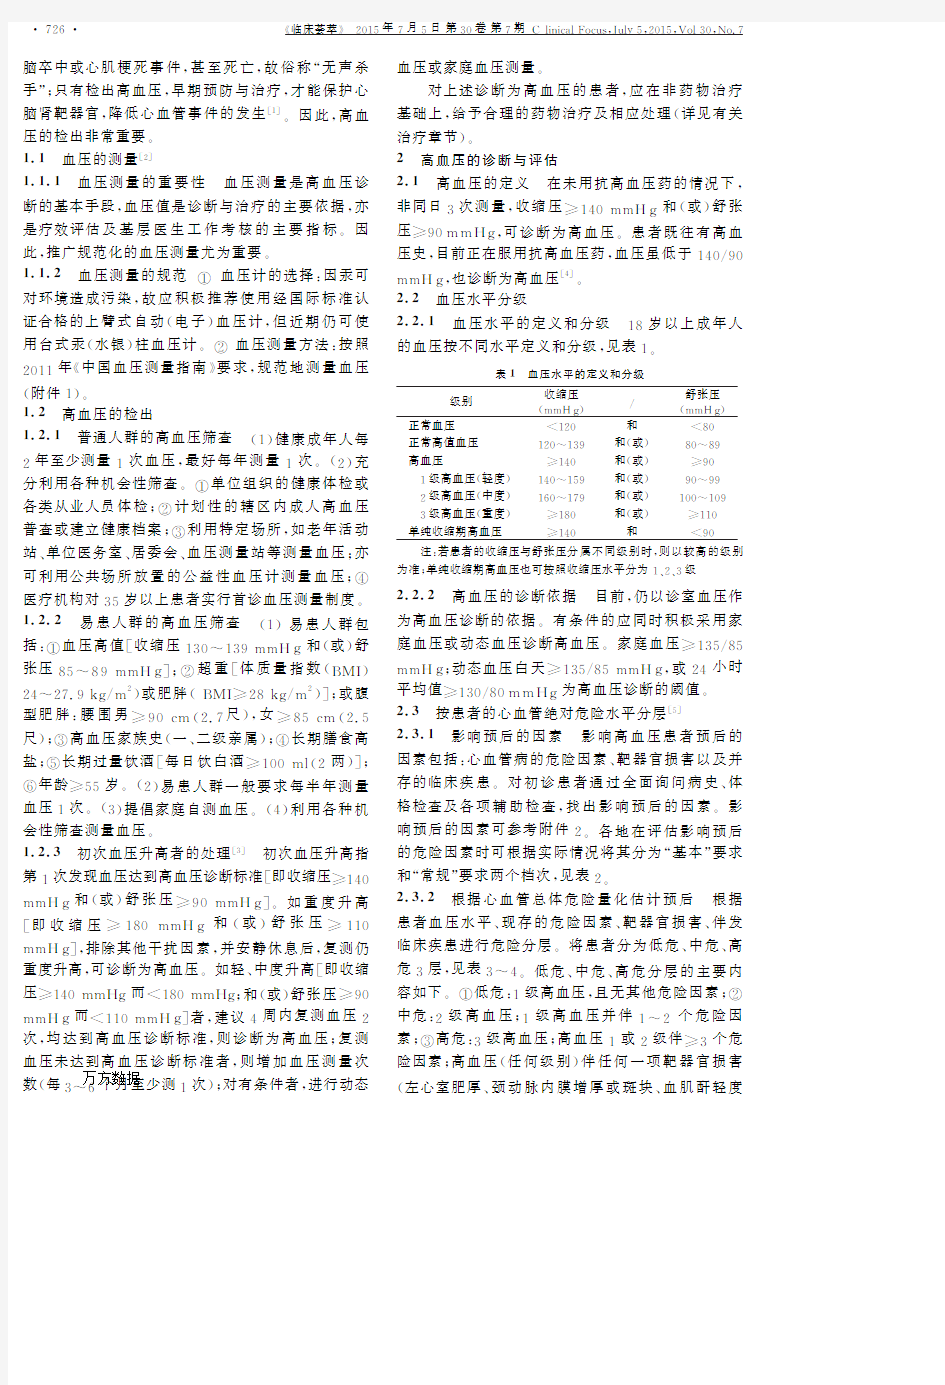 《中国高血压基层管理指南》2014年修订版